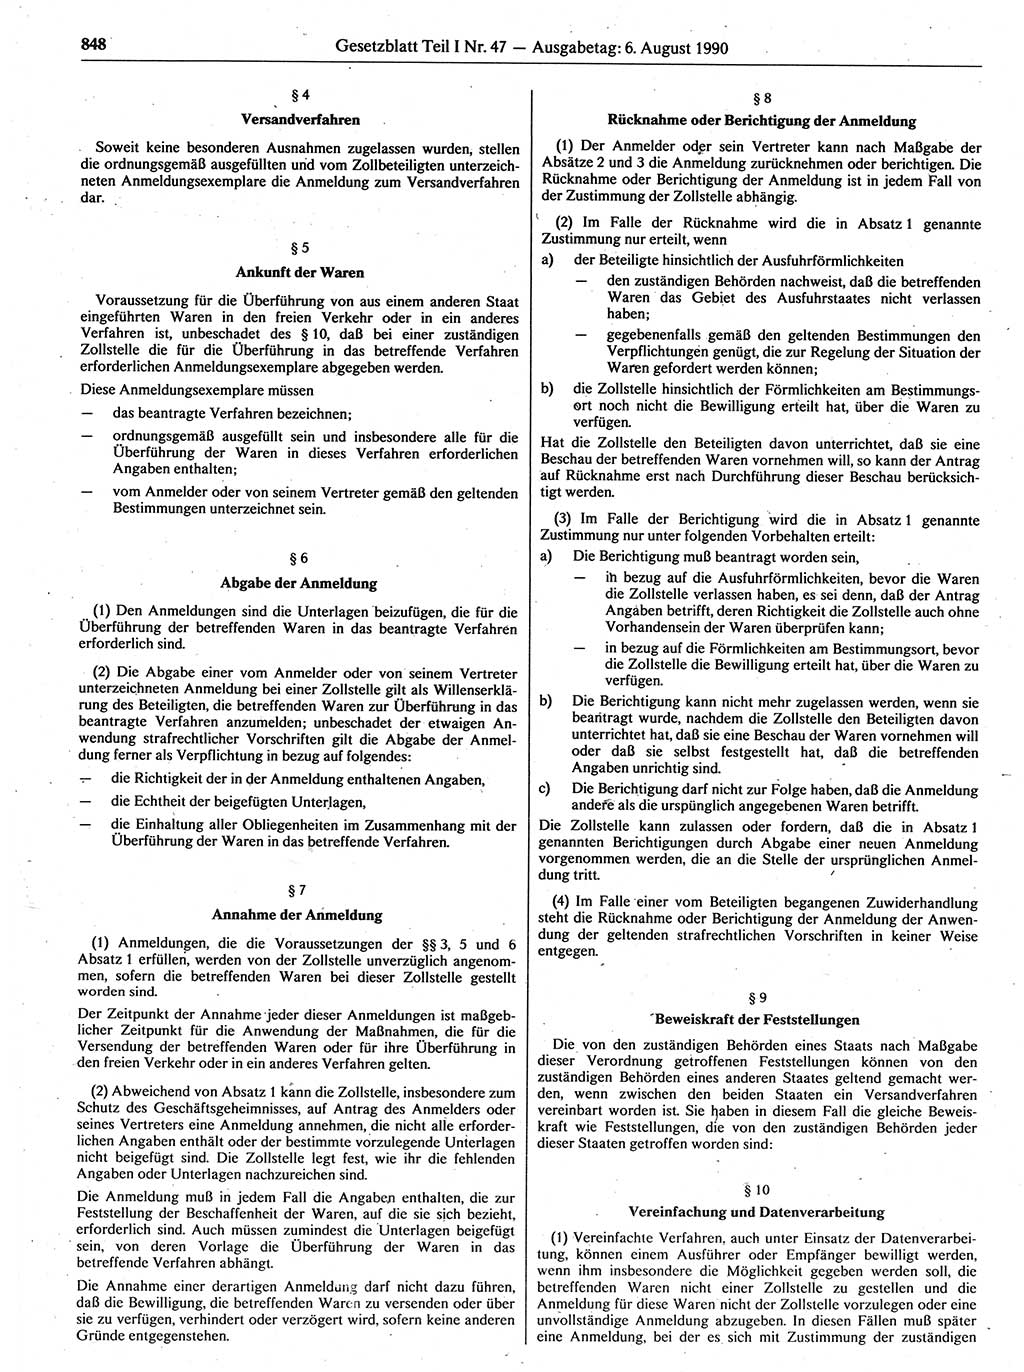 Gesetzblatt (GBl.) der Deutschen Demokratischen Republik (DDR) Teil Ⅰ 1990, Seite 848 (GBl. DDR Ⅰ 1990, S. 848)